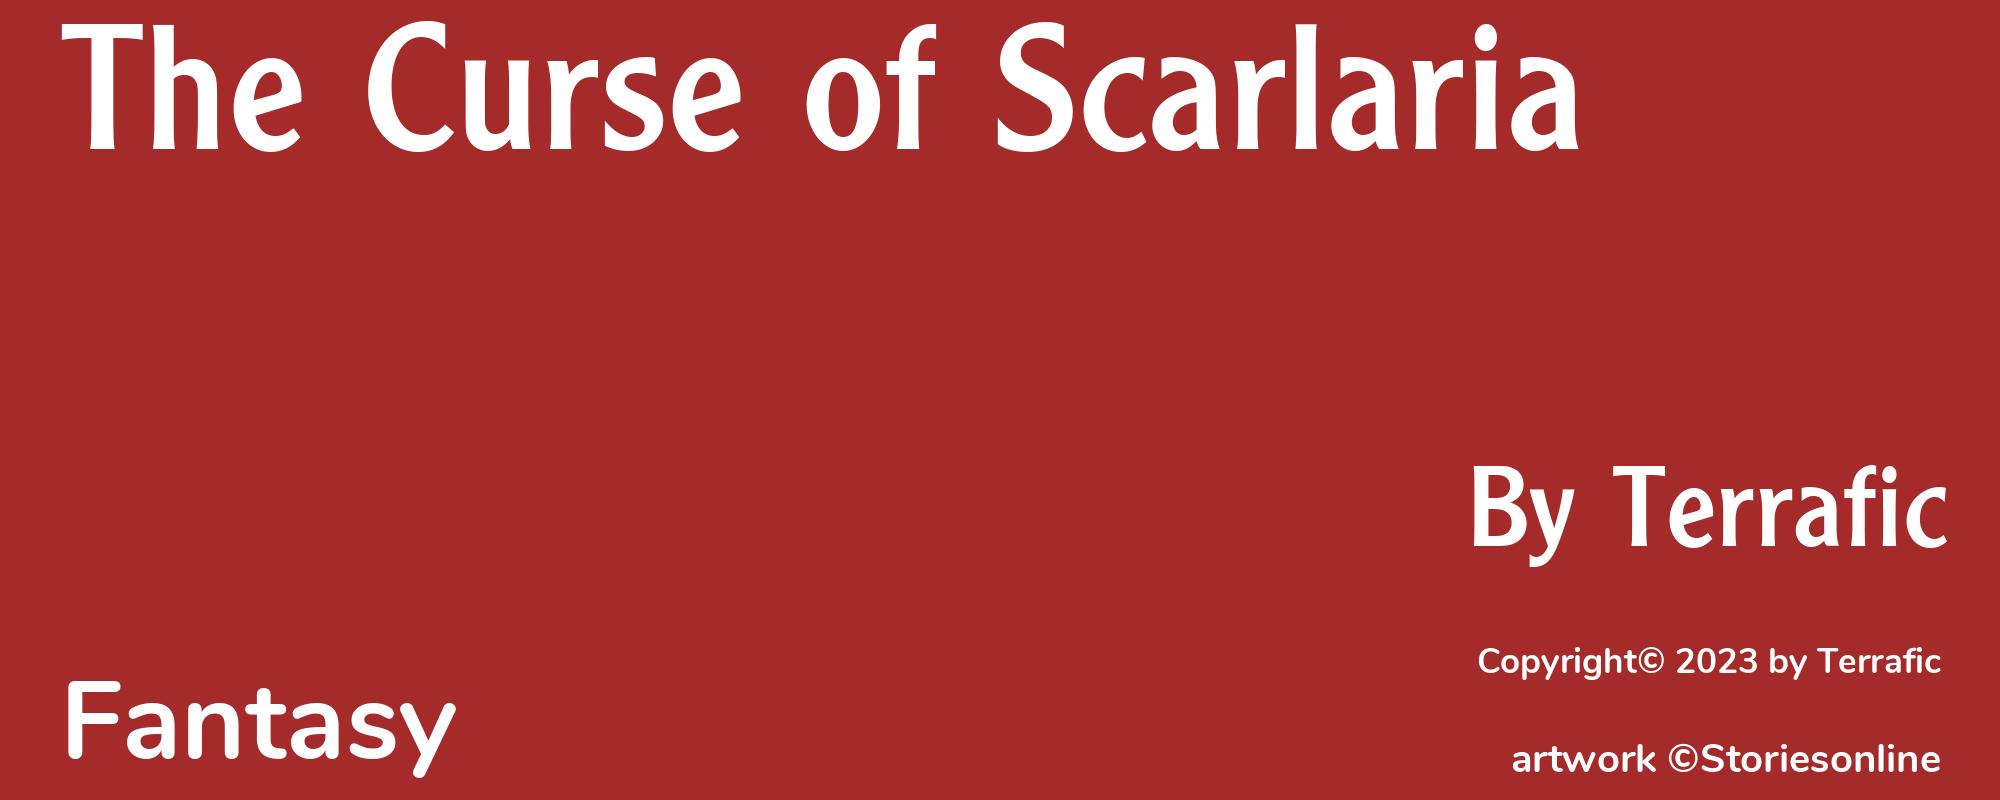 The Curse of Scarlaria - Cover